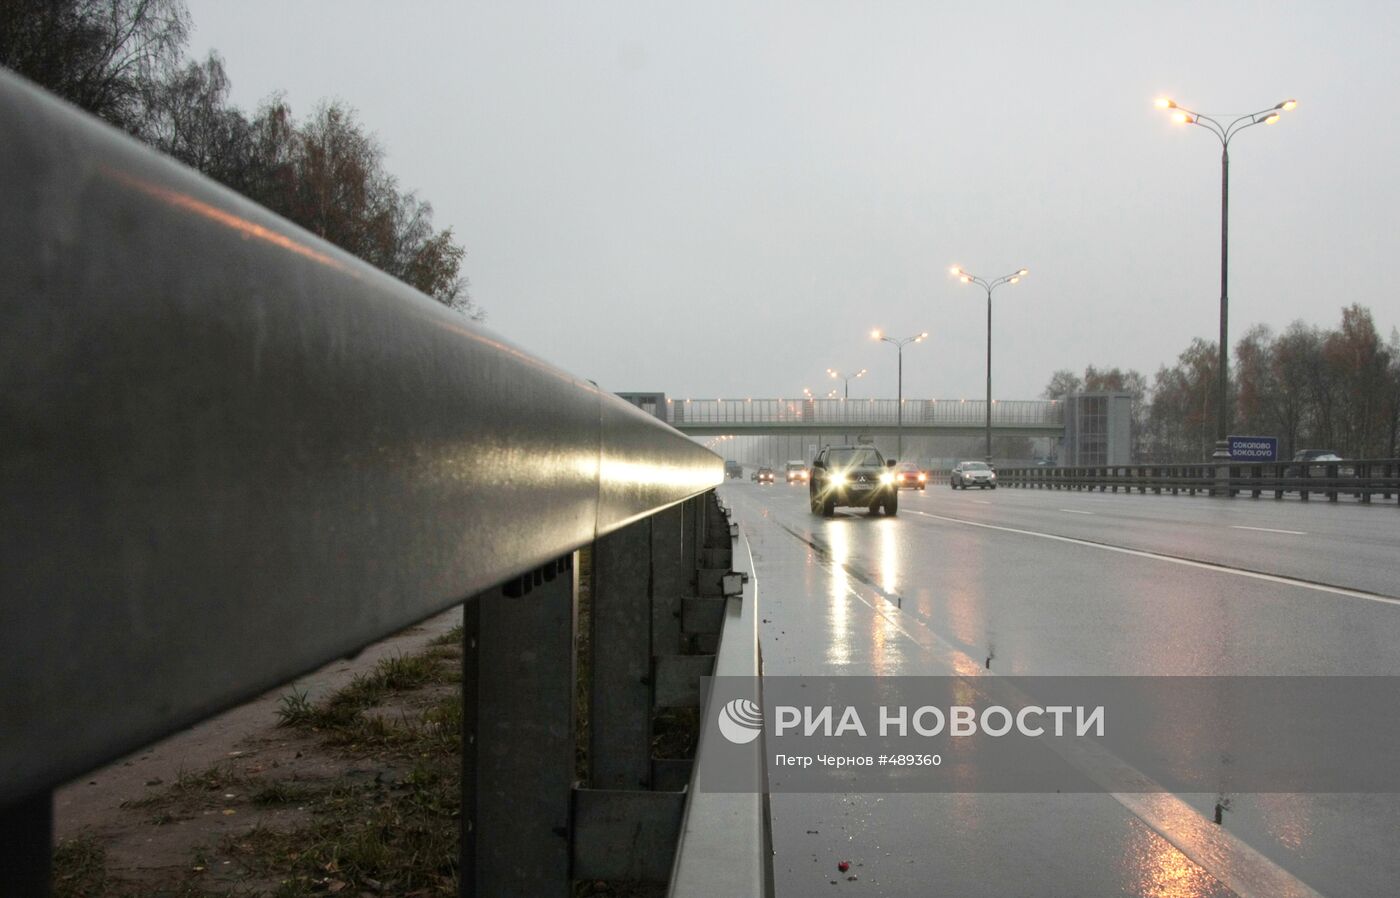 Открыт реконструированный участок трассы М-3 "Украина"